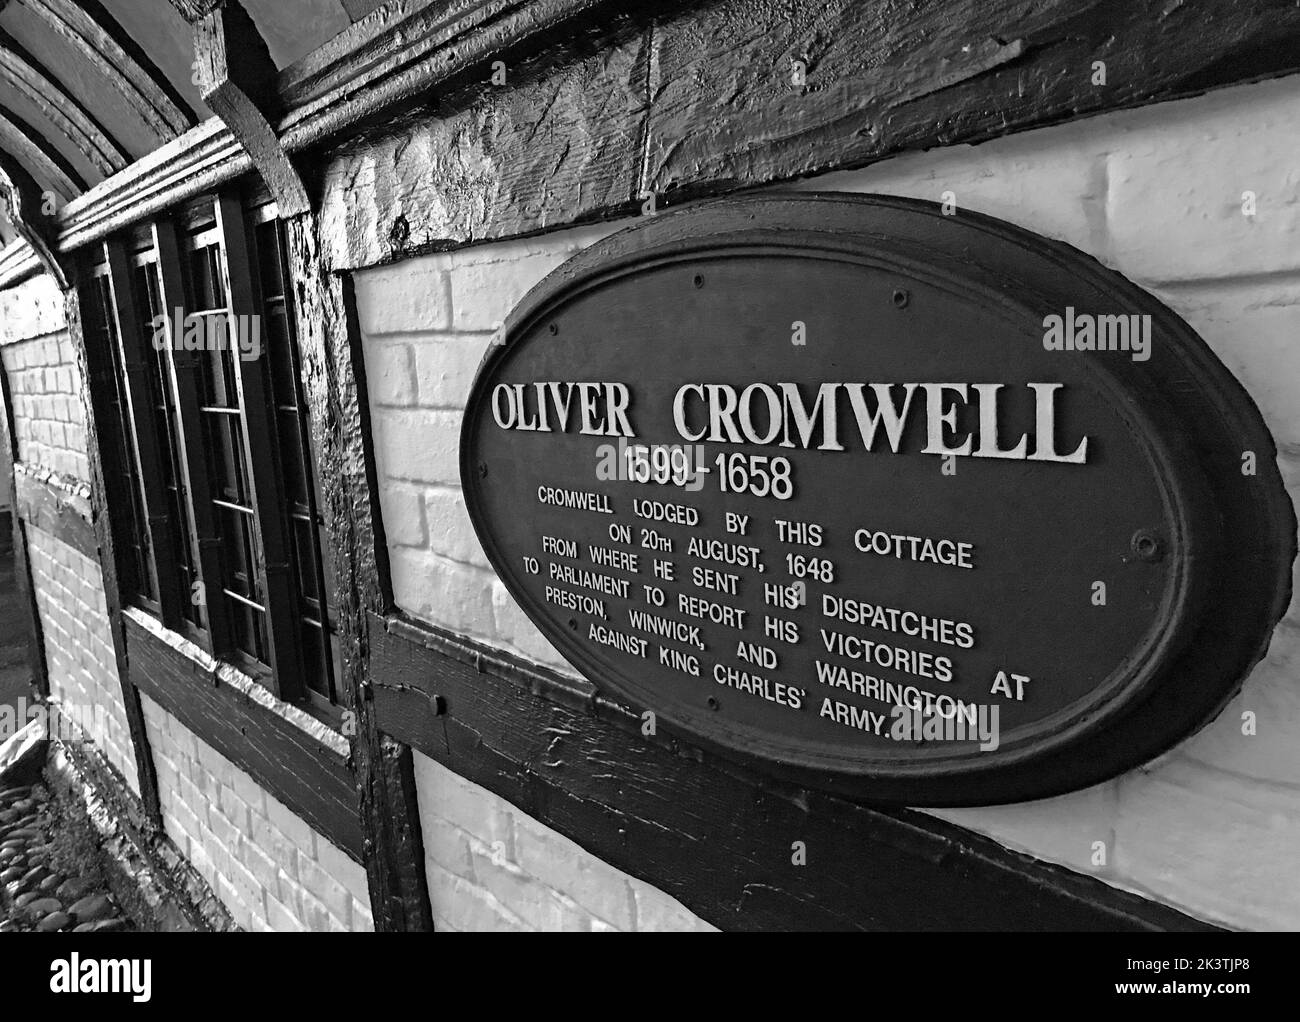 Oliver Cromwell Cottage 1599-1658, déposé par ce chalet 20th août 1648, suite à des victoires à Preston , Winwick & Warrington Banque D'Images